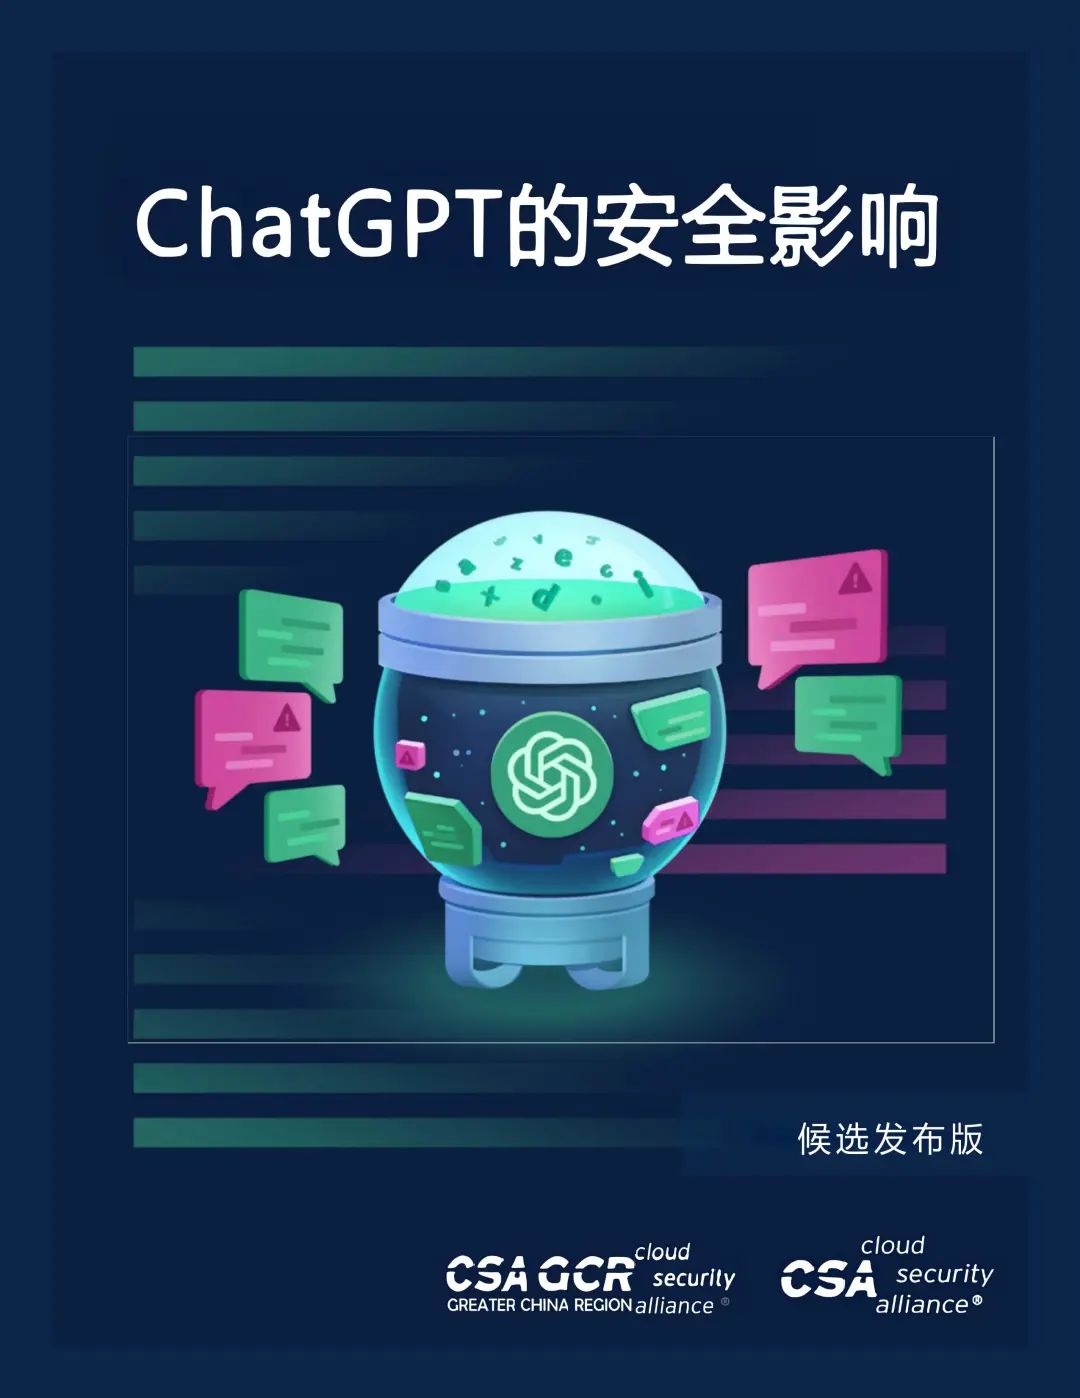 ChatGPT 入门教程||ChatGPT 应用场景1：让AI回答问题||ChatGPT应用场景2：基于已有的示例回答